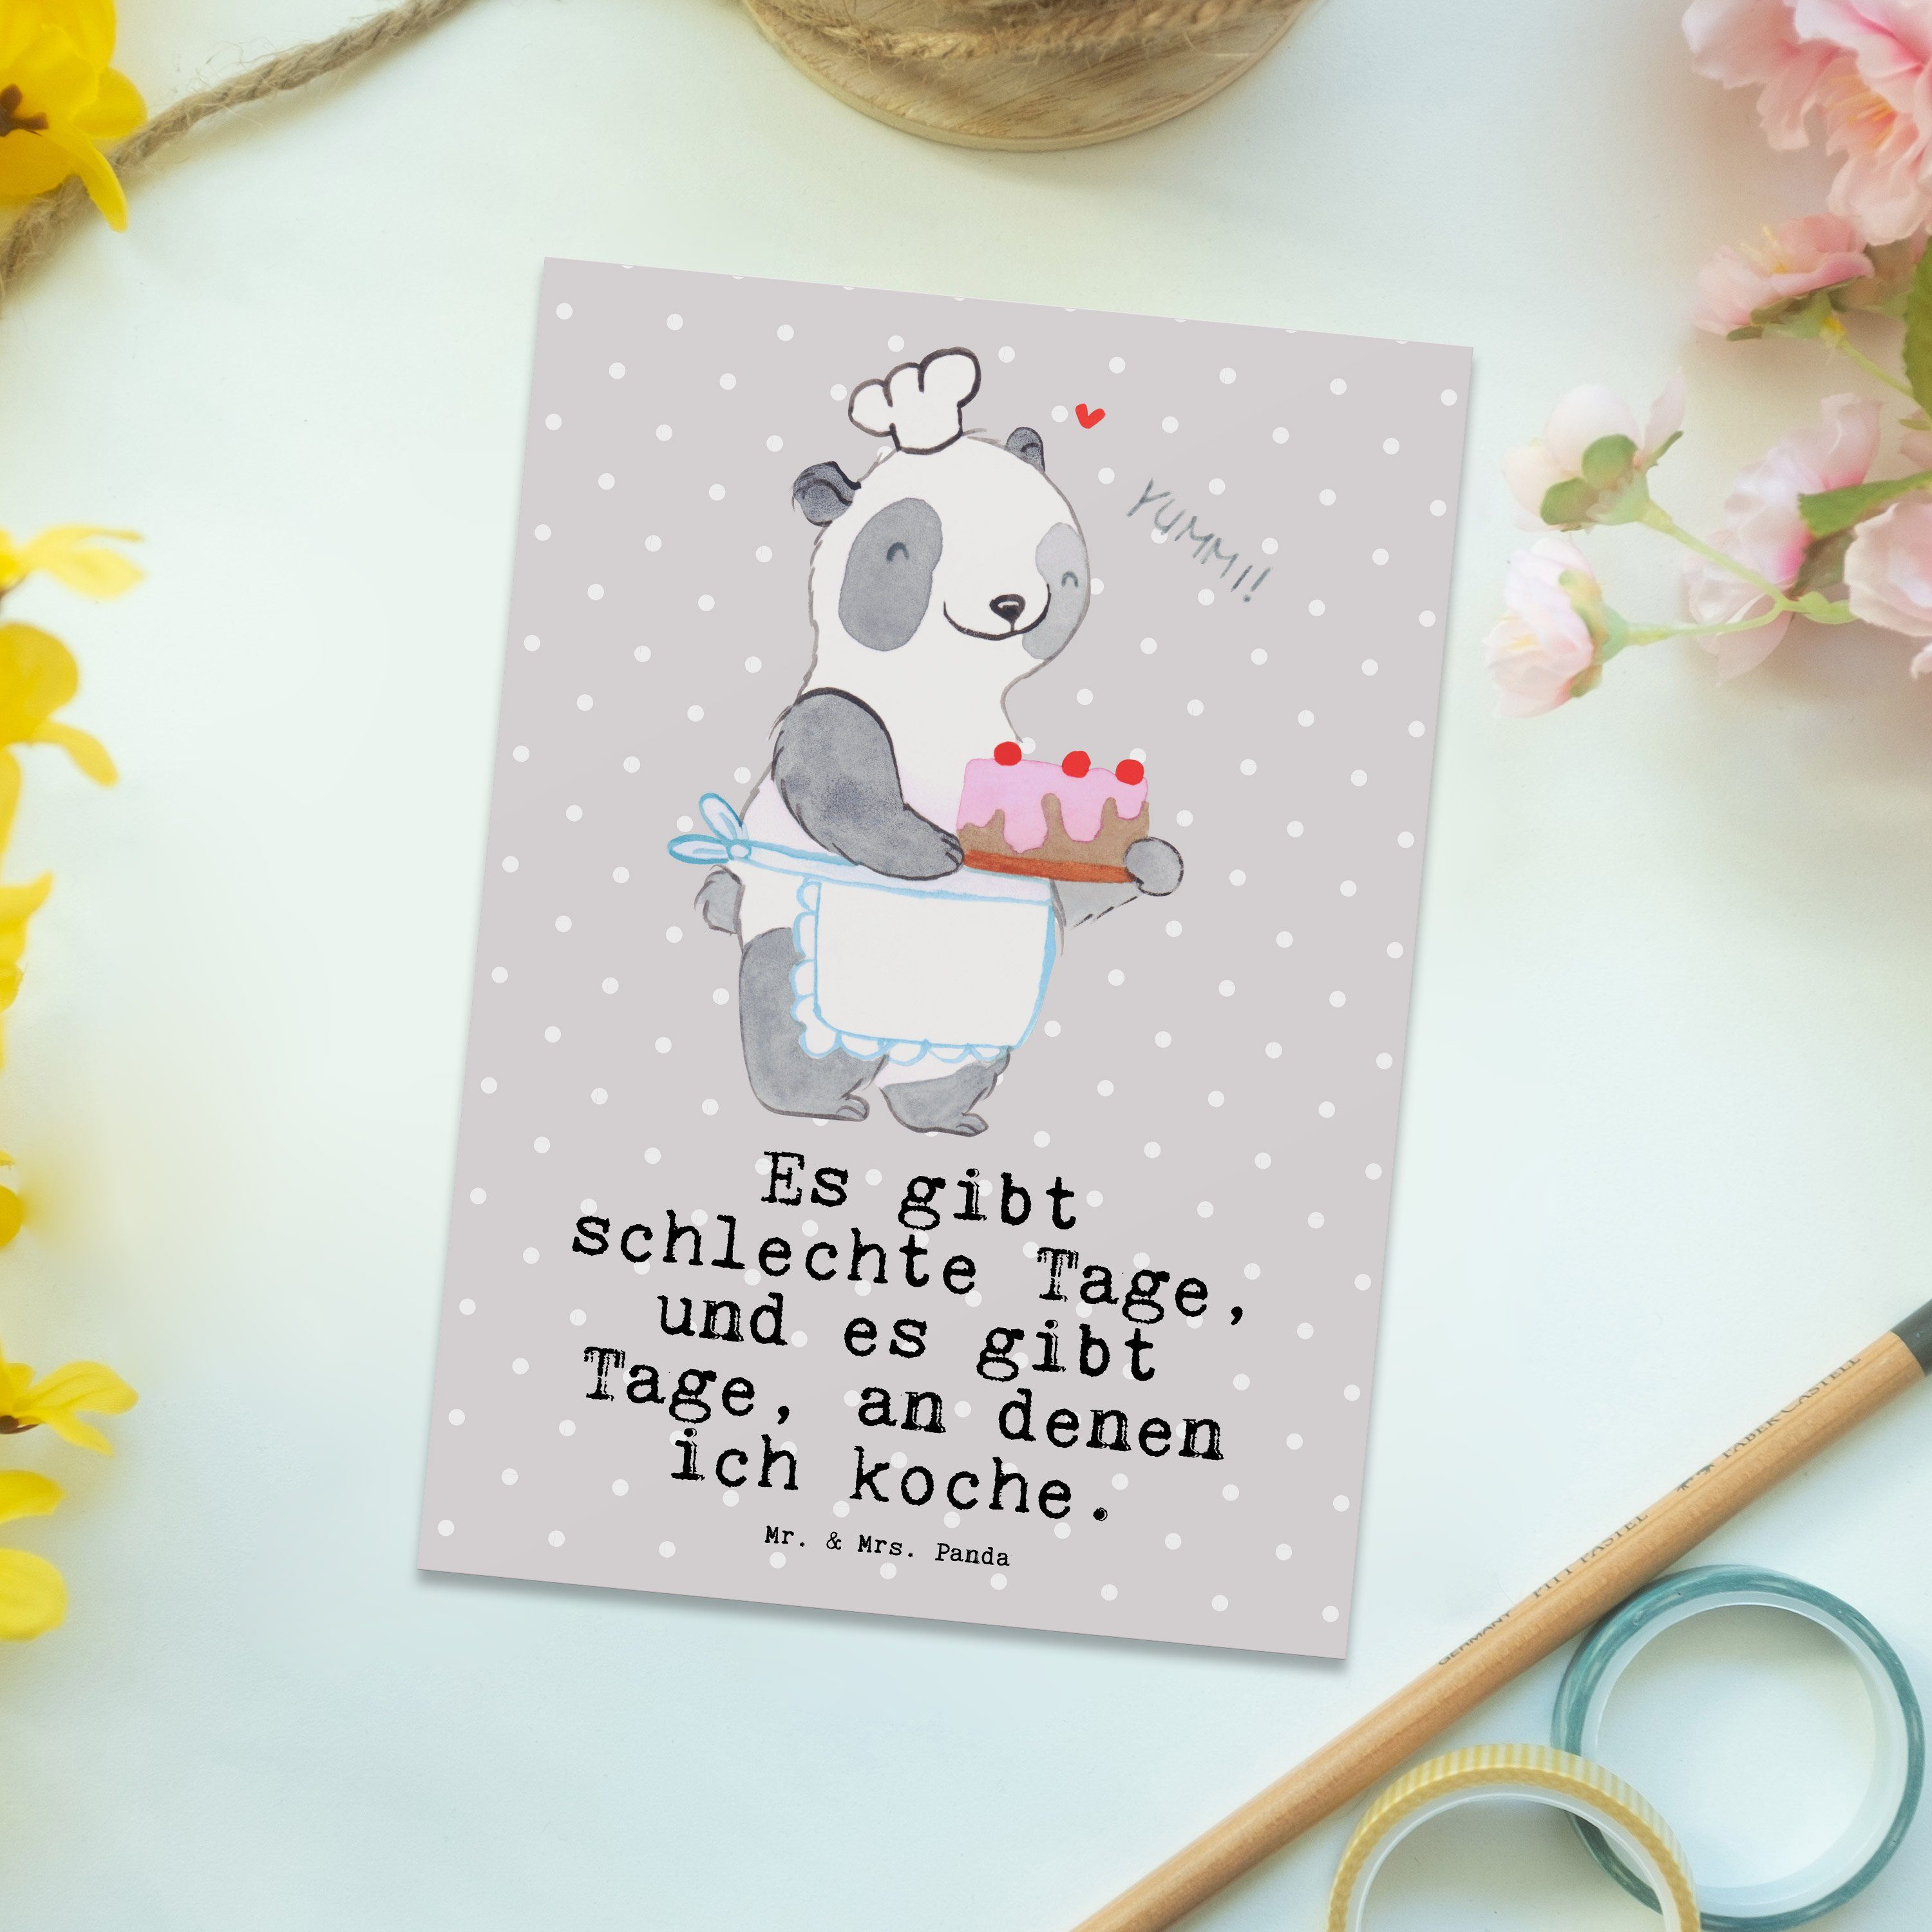 Mr. & Mrs. Panda Postkarte Bär Kochen Tage - Grau Pastell - Geschenk, Auszeichnung, Geschenkkart